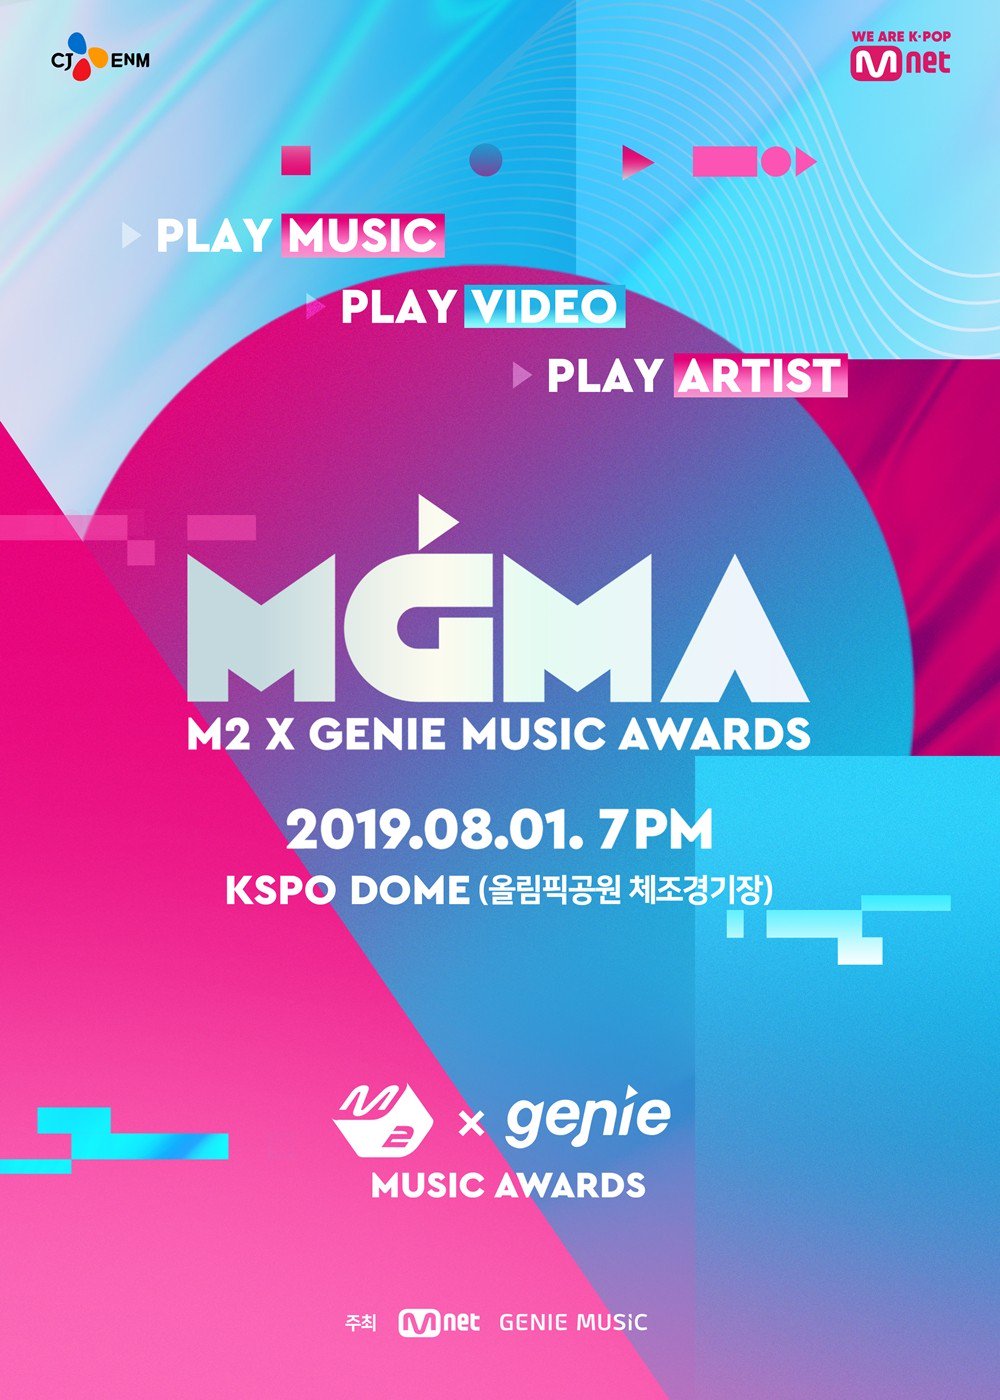 Mnet Music Chart Vote